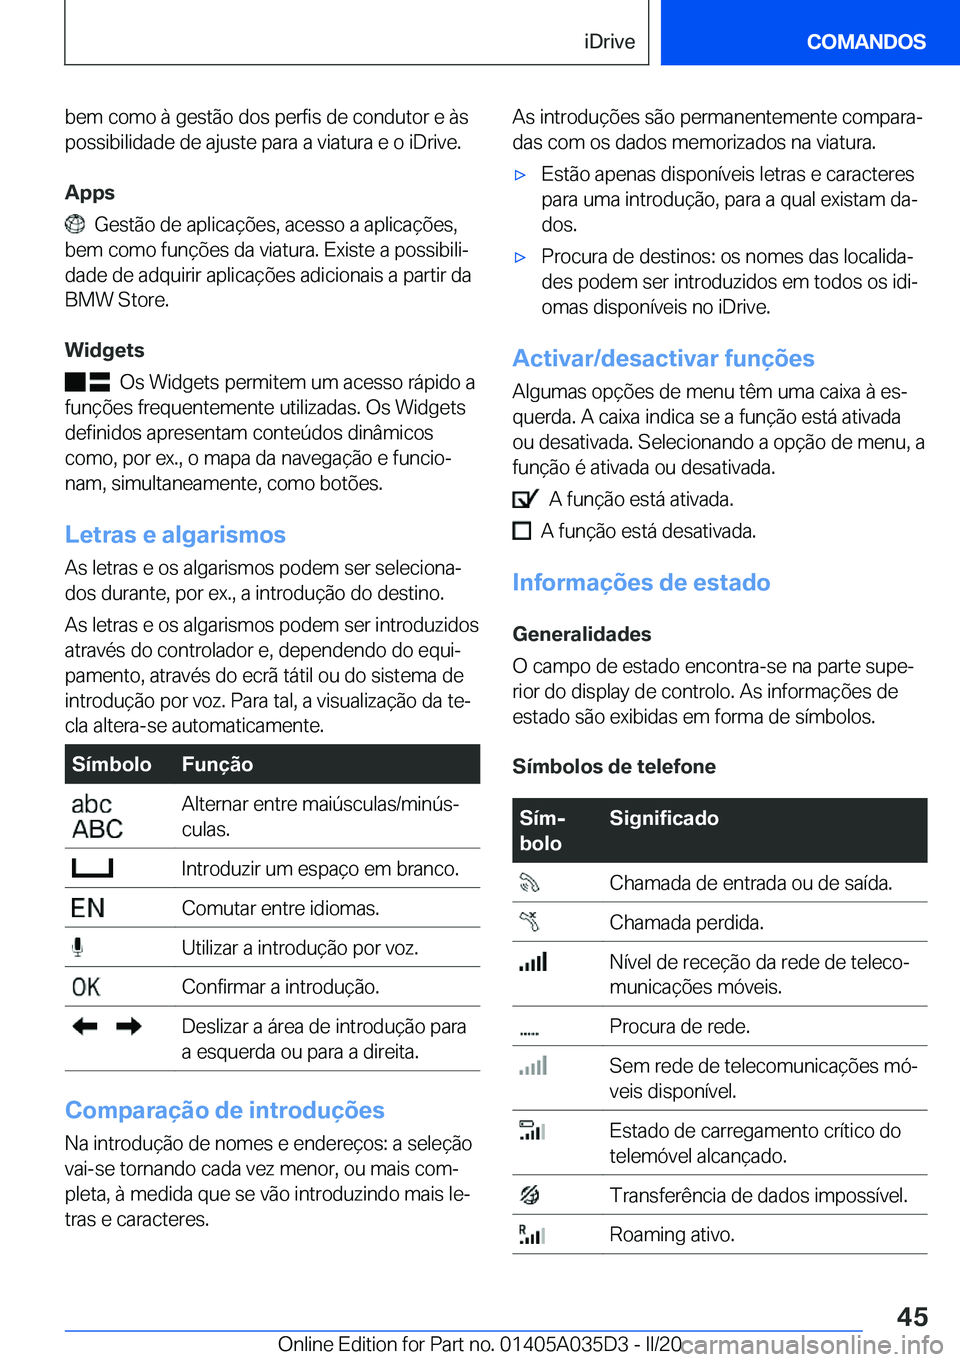 BMW X4 2020  Manual do condutor (in Portuguese) �b�e�m��c�o�m�o��à��g�e�s�t�ã�o��d�o�s��p�e�r�f�i�s��d�e��c�o�n�d�u�t�o�r��e��à�s�p�o�s�s�i�b�i�l�i�d�a�d�e��d�e��a�j�u�s�t�e��p�a�r�a��a��v�i�a�t�u�r�a��e��o��i�D�r�i�v�e�.
�A�p�p